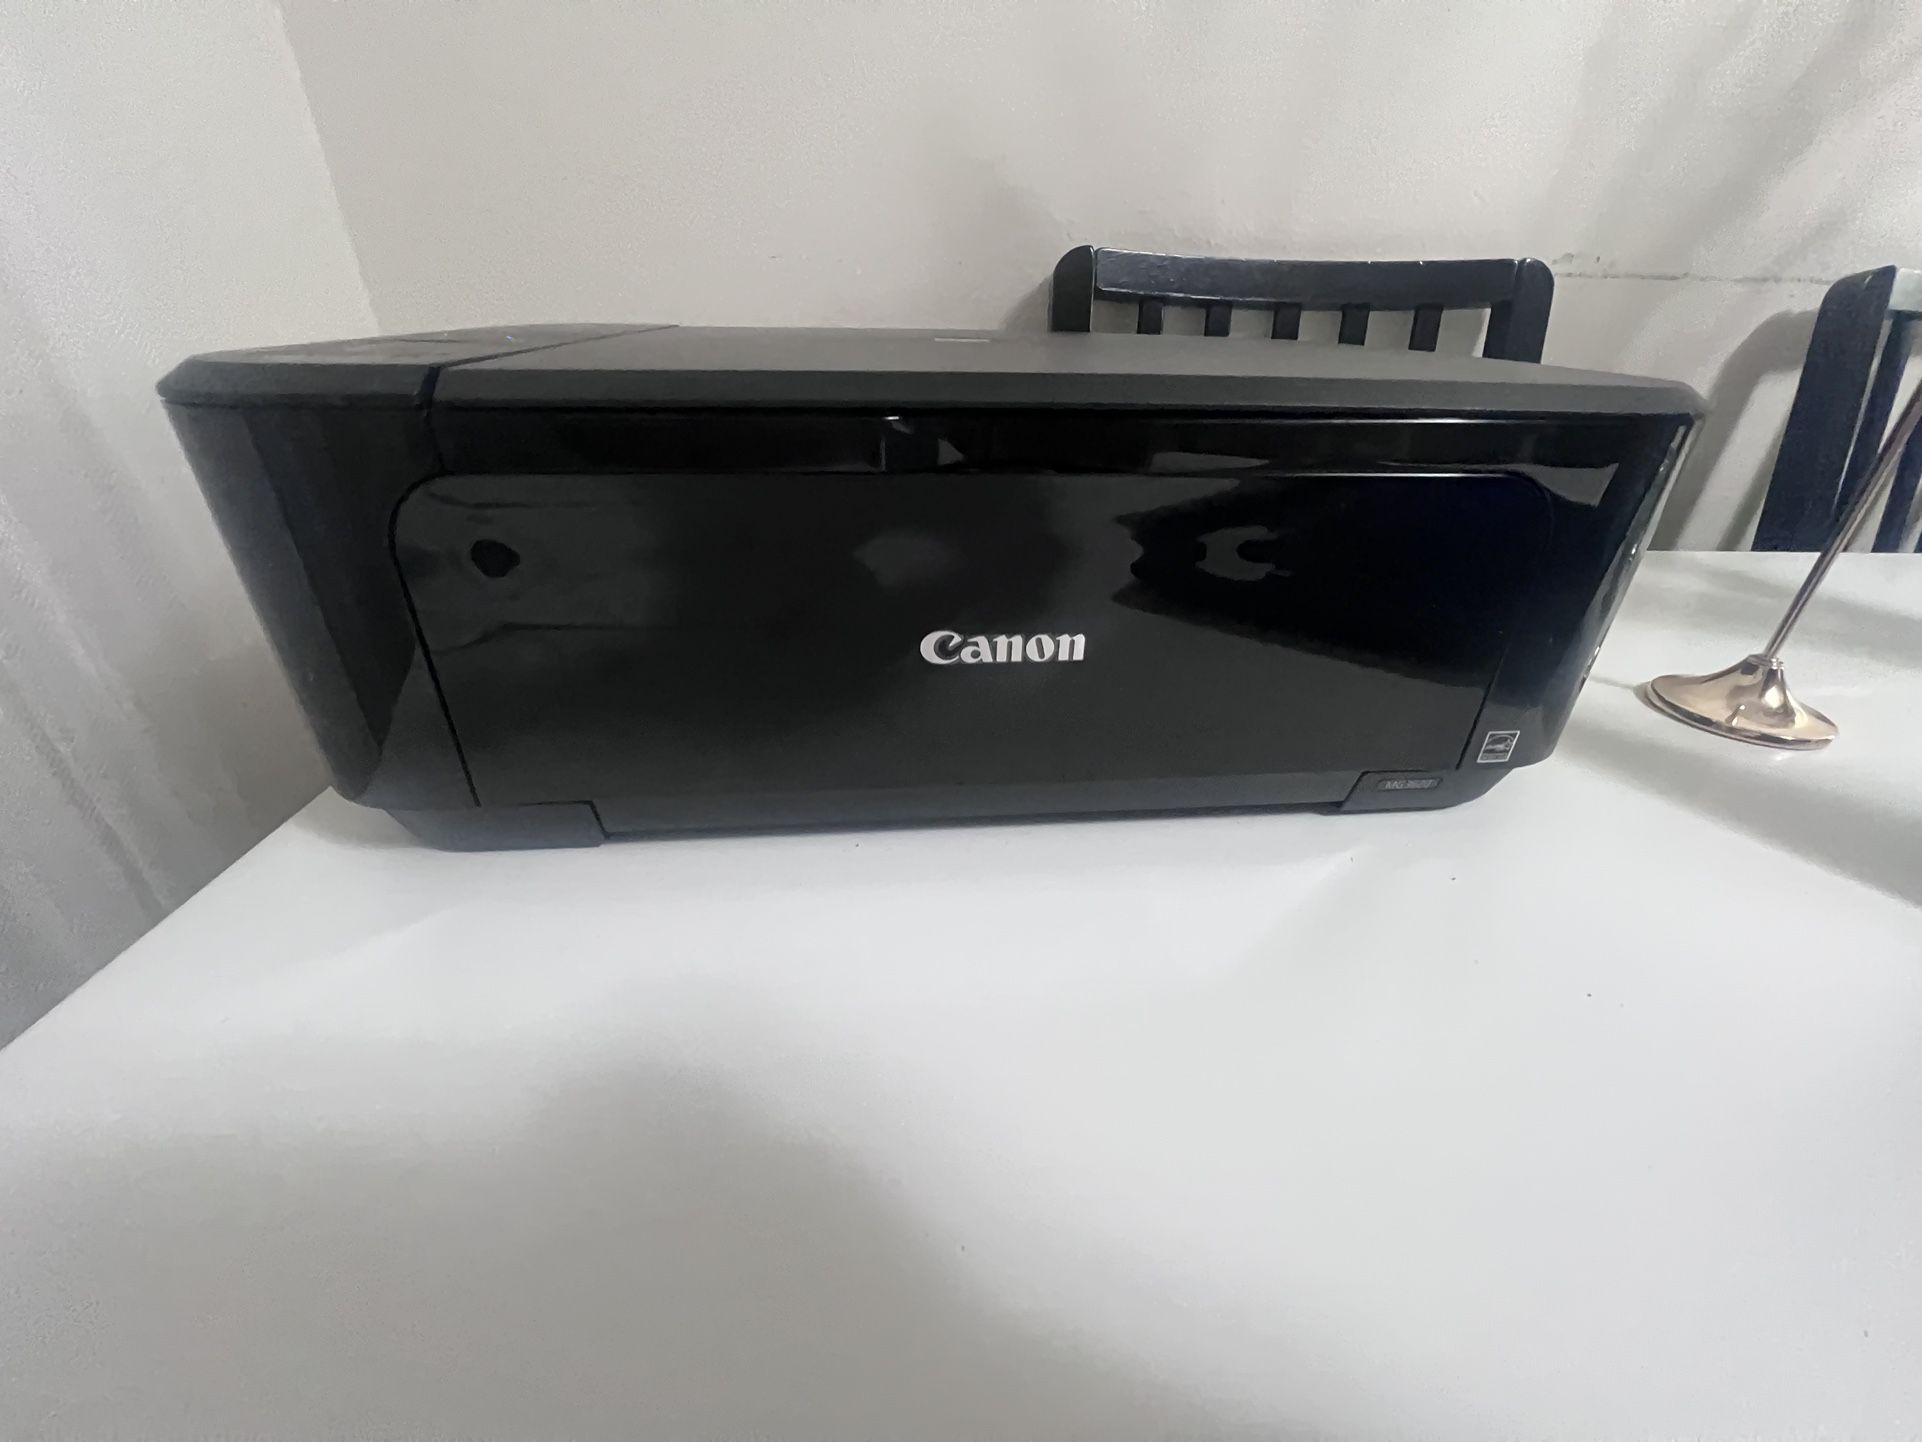 Canon MG3620 Printer